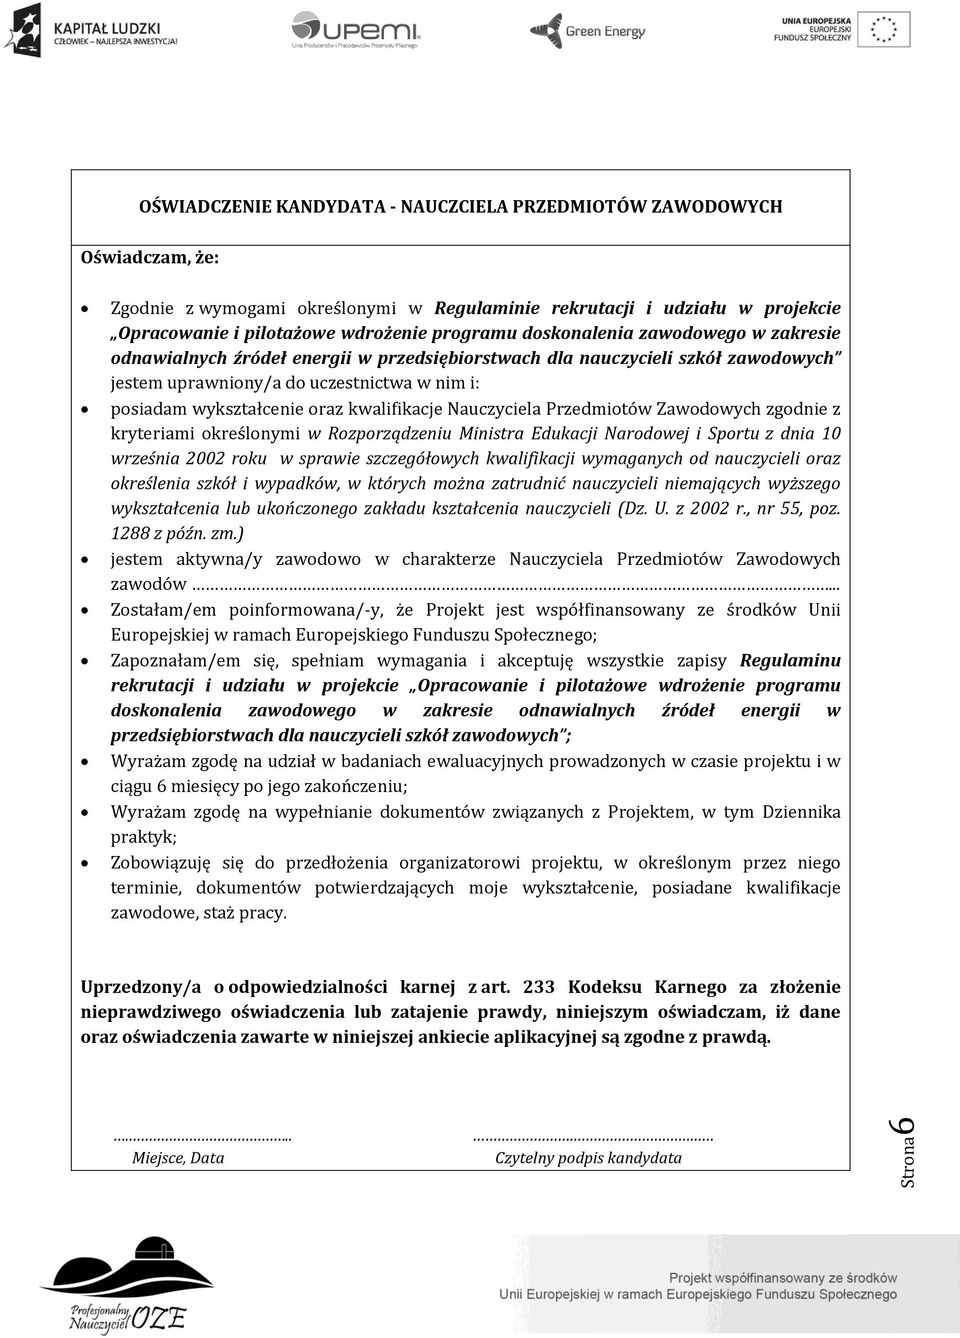 kwalifikacje Nauczyciela Przedmiotów Zawodowych zgodnie z kryteriami określonymi w Rozporządzeniu Ministra Edukacji Narodowej i Sportu z dnia 10 września 2002 roku w sprawie szczegółowych